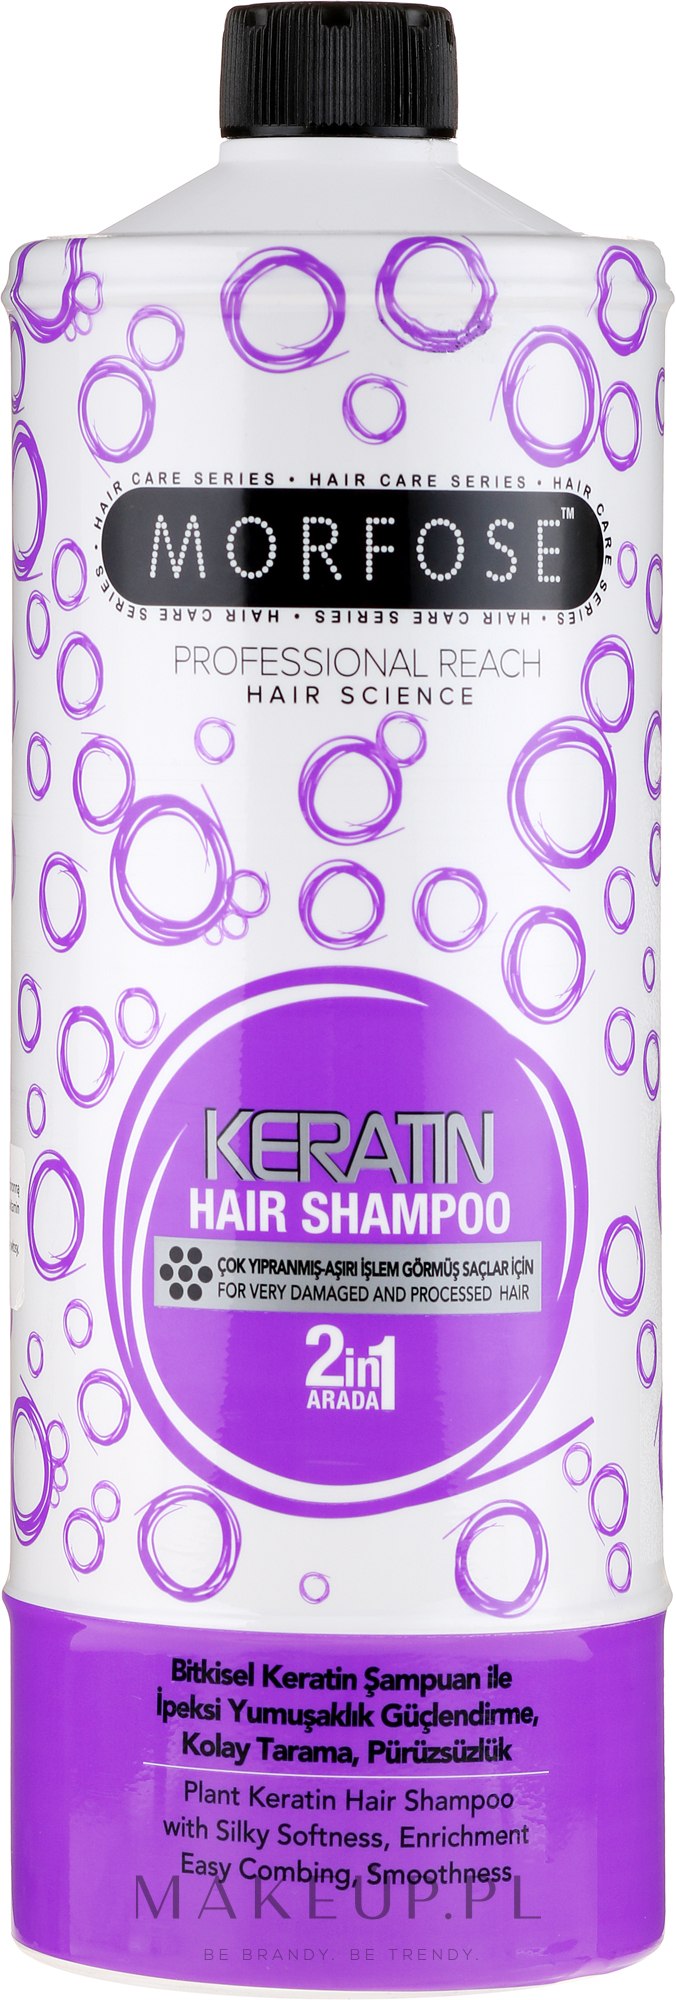 morfose keratin szampon do włosów 1000ml